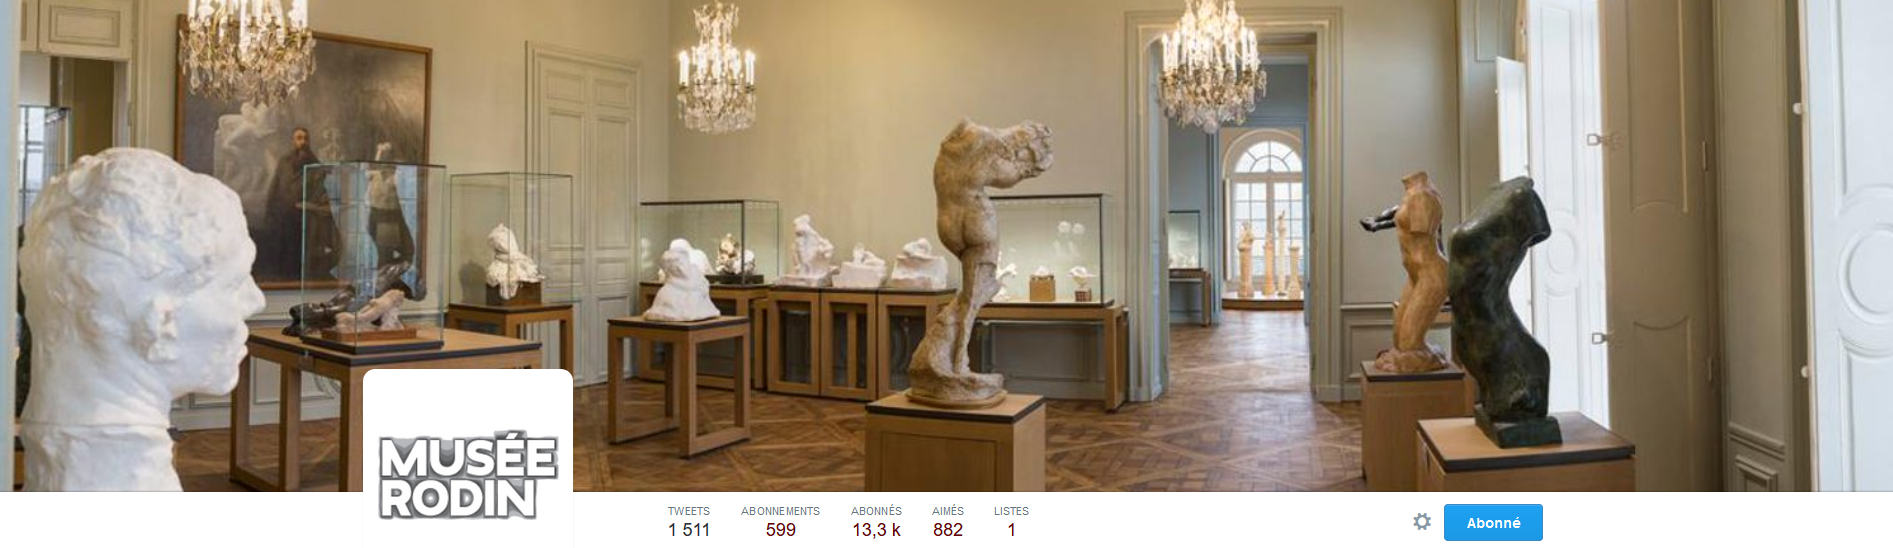 FireShot Screen Capture #136 - 'Musée Rodin (@MuseeRodinParis) I Twitter' - twitter_com_MuseeRodinParis